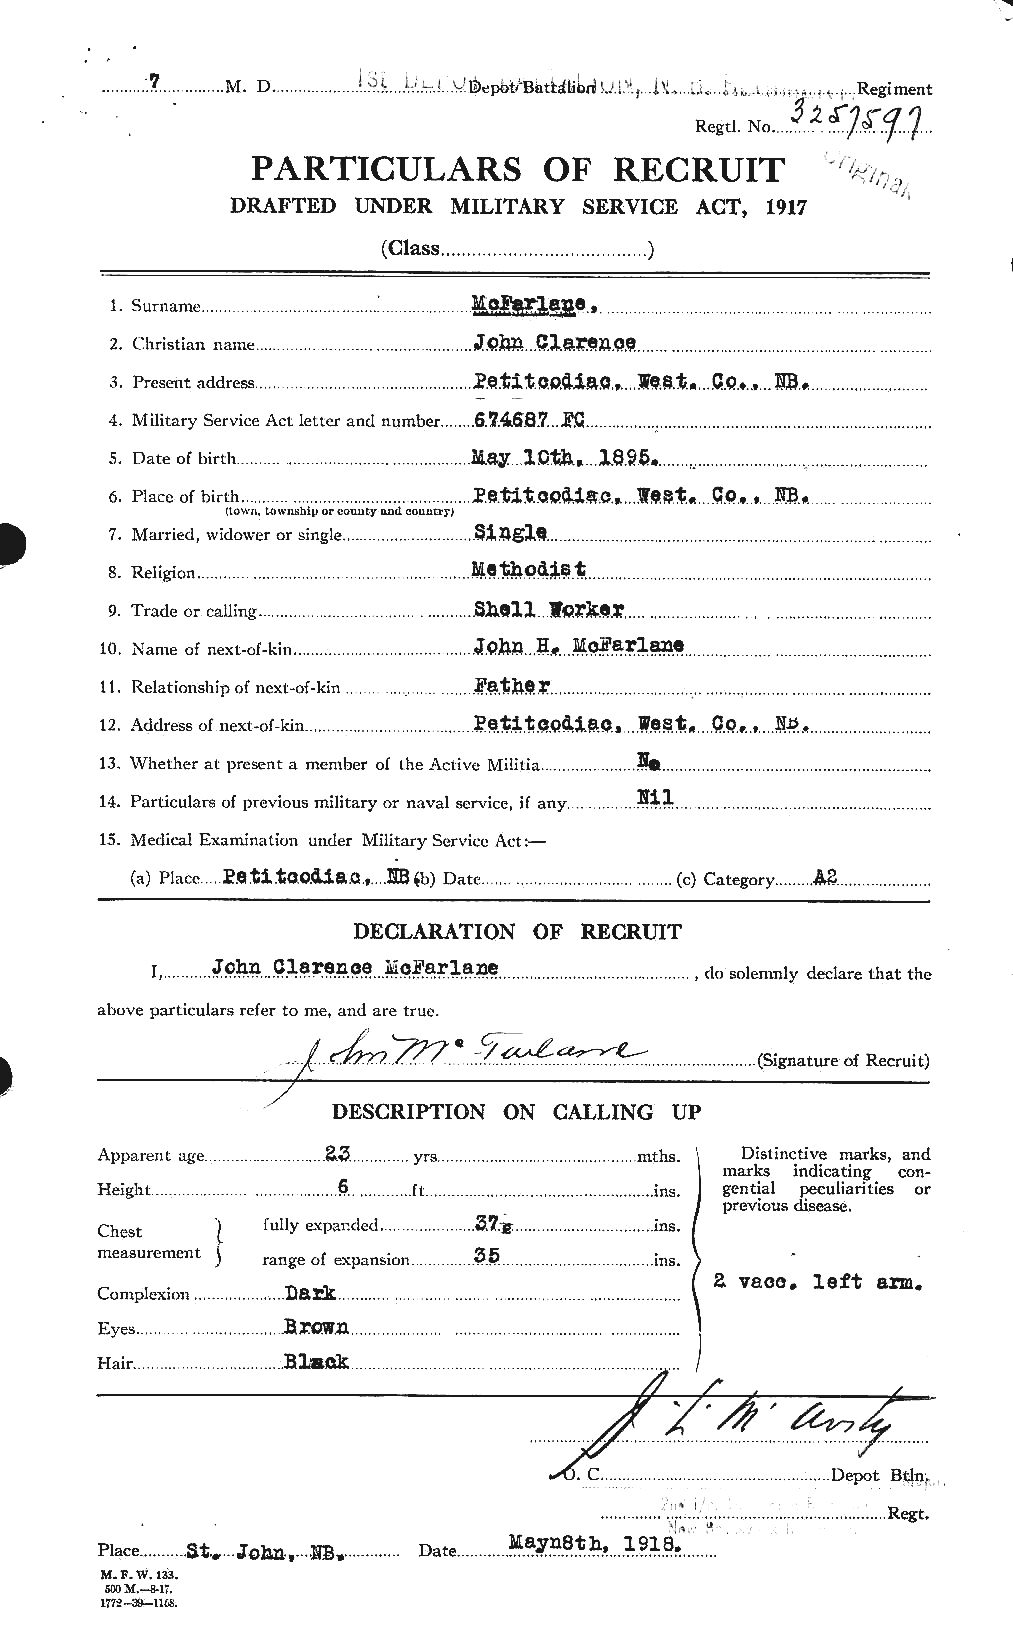 Dossiers du Personnel de la Première Guerre mondiale - CEC 522685a